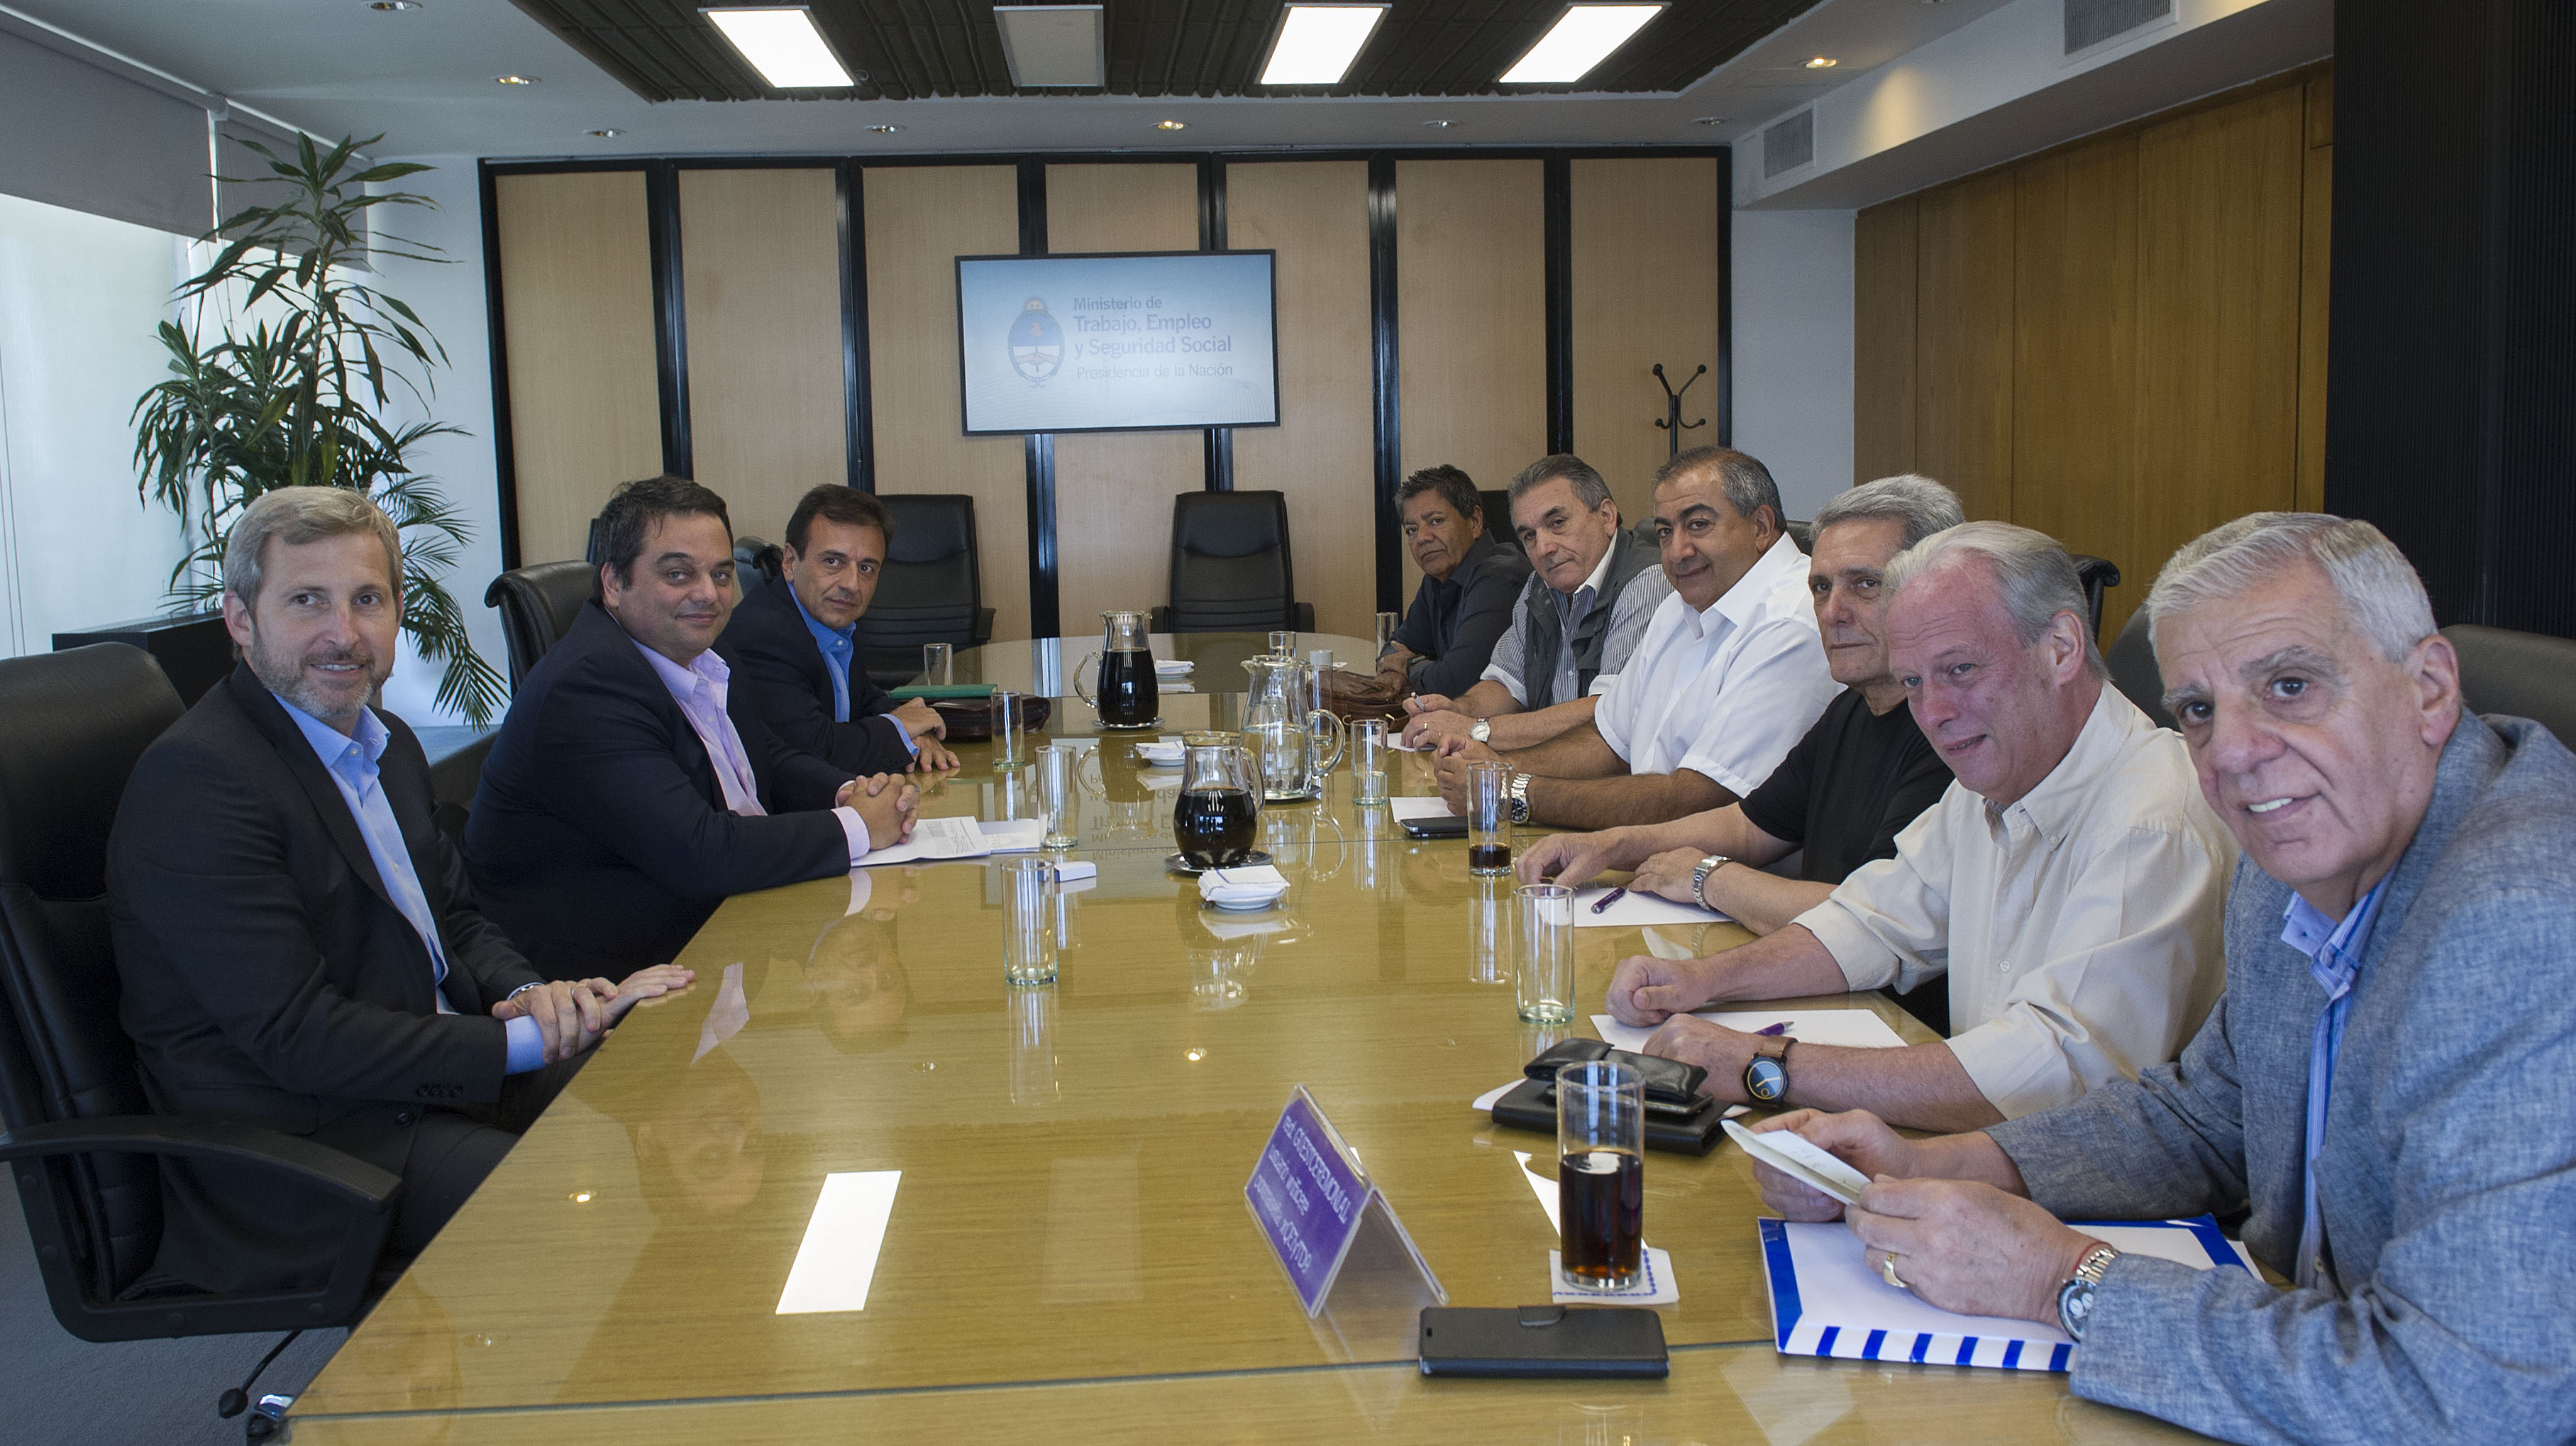  Los ministros Rogelio Frigerio y Jorge Triaca, y el secretario Mario Quintana se reunieron con la CGT